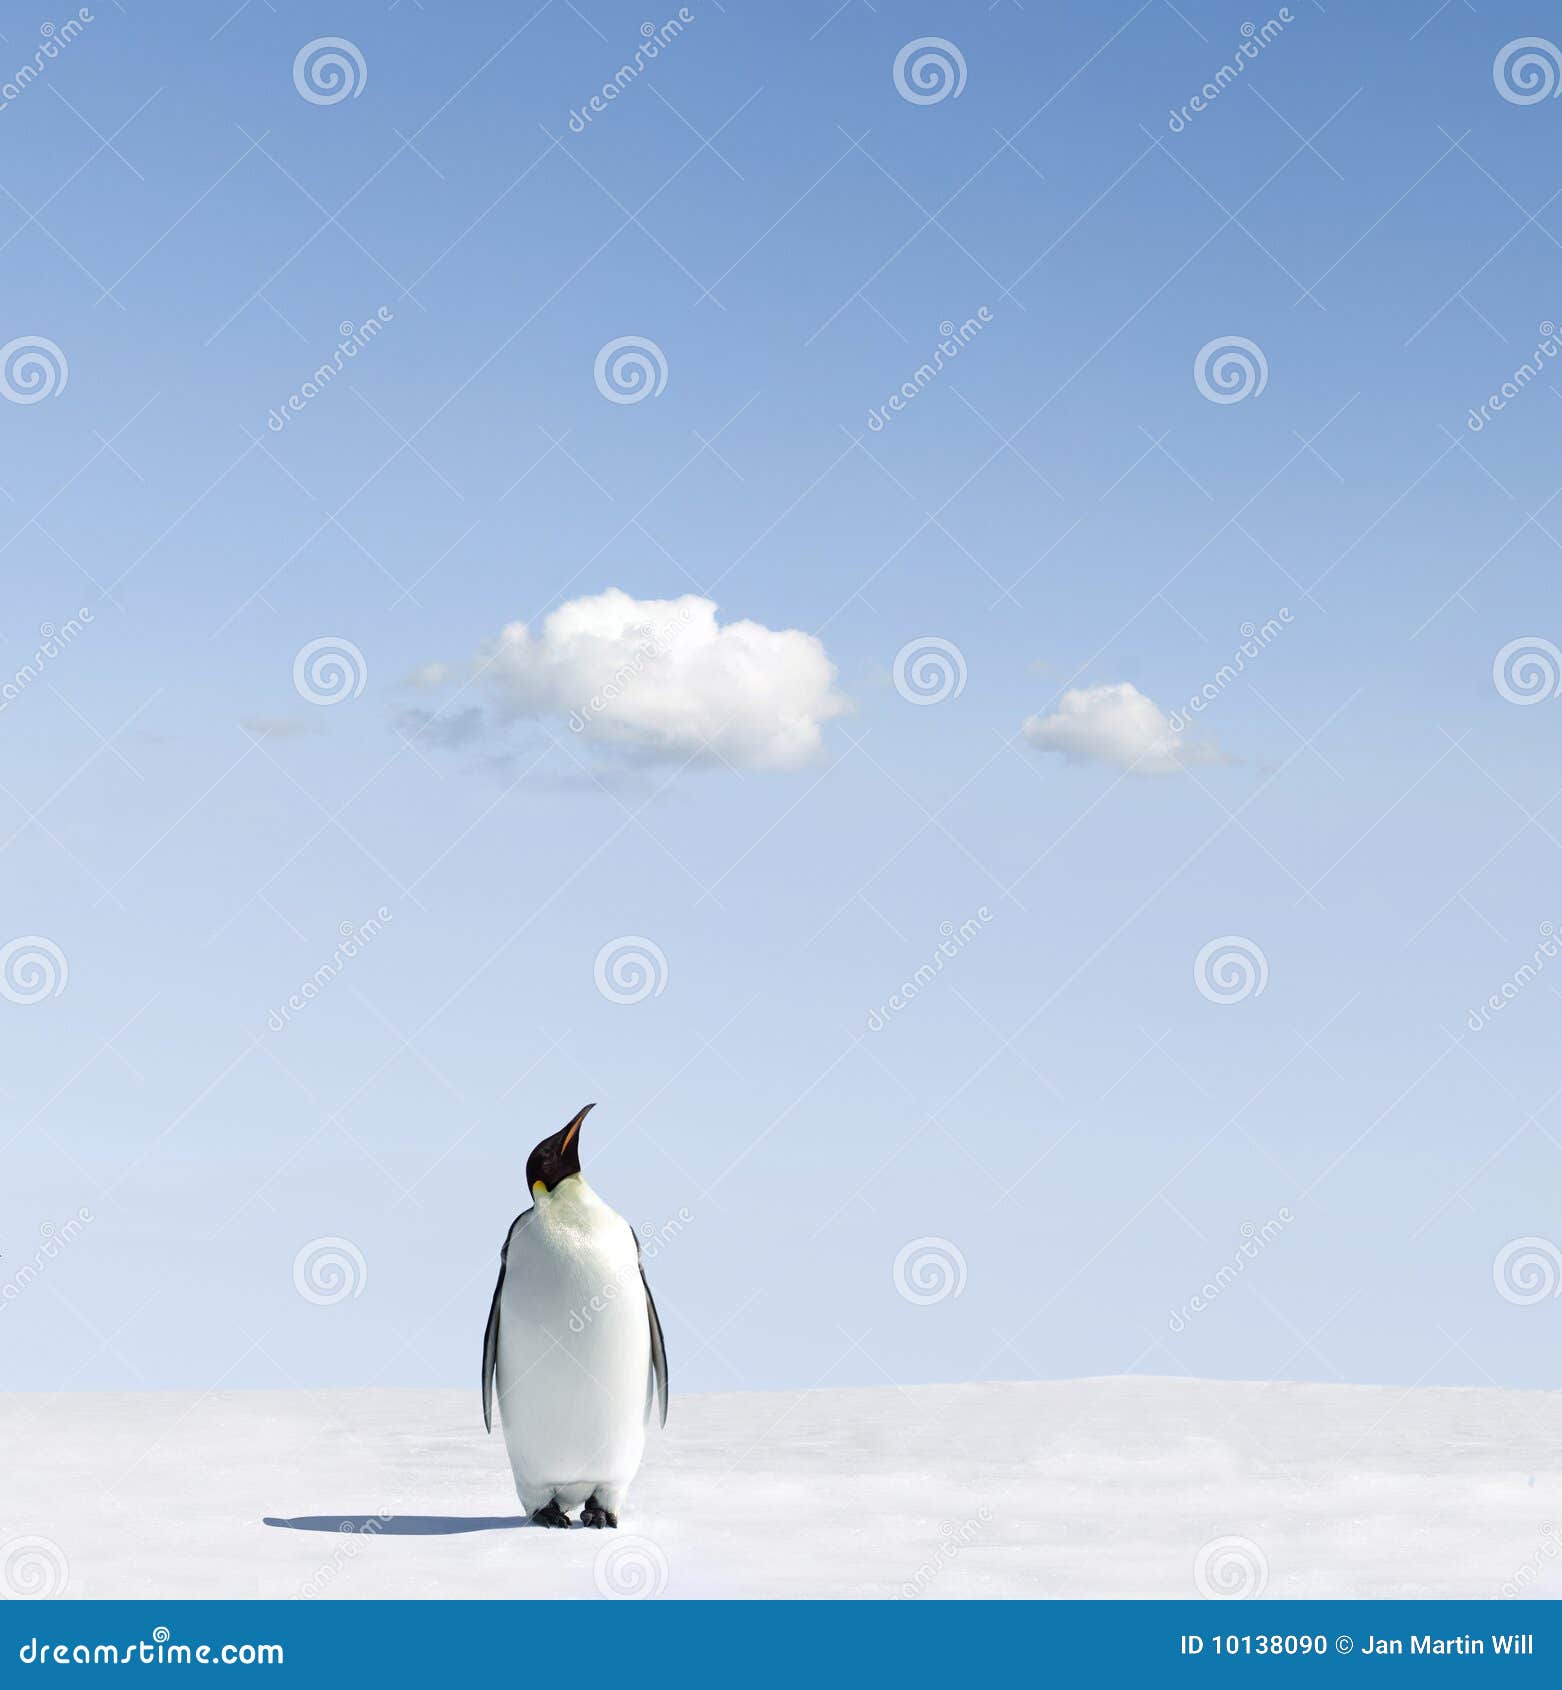 emperor penguin on snowfield